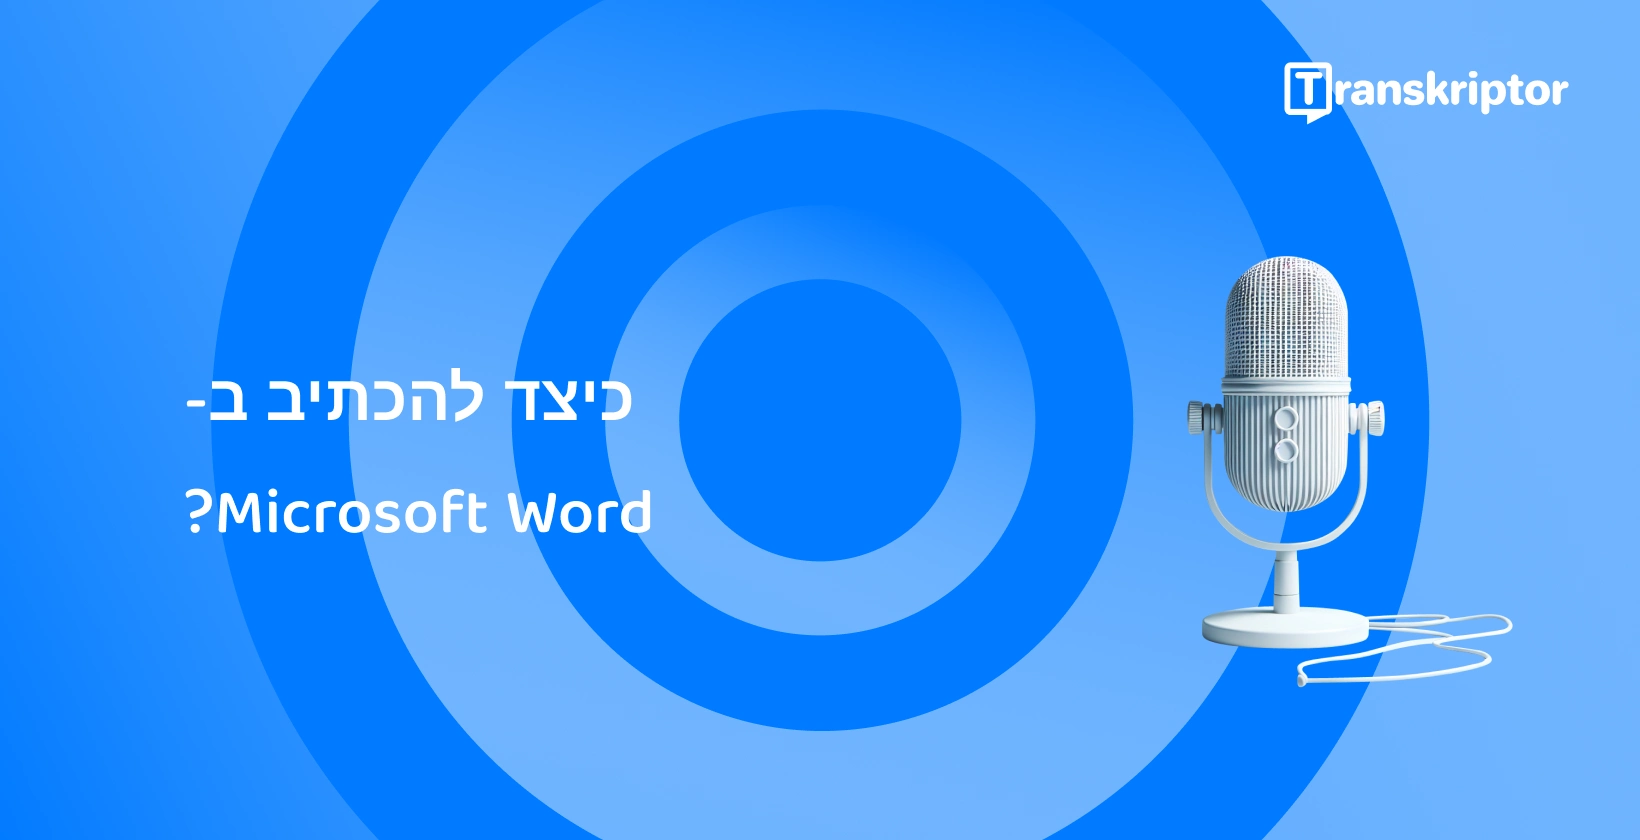 מיקרופון מודרני על רקע כחול, המסמל תכונות הכתבה קולית Microsoft Word.